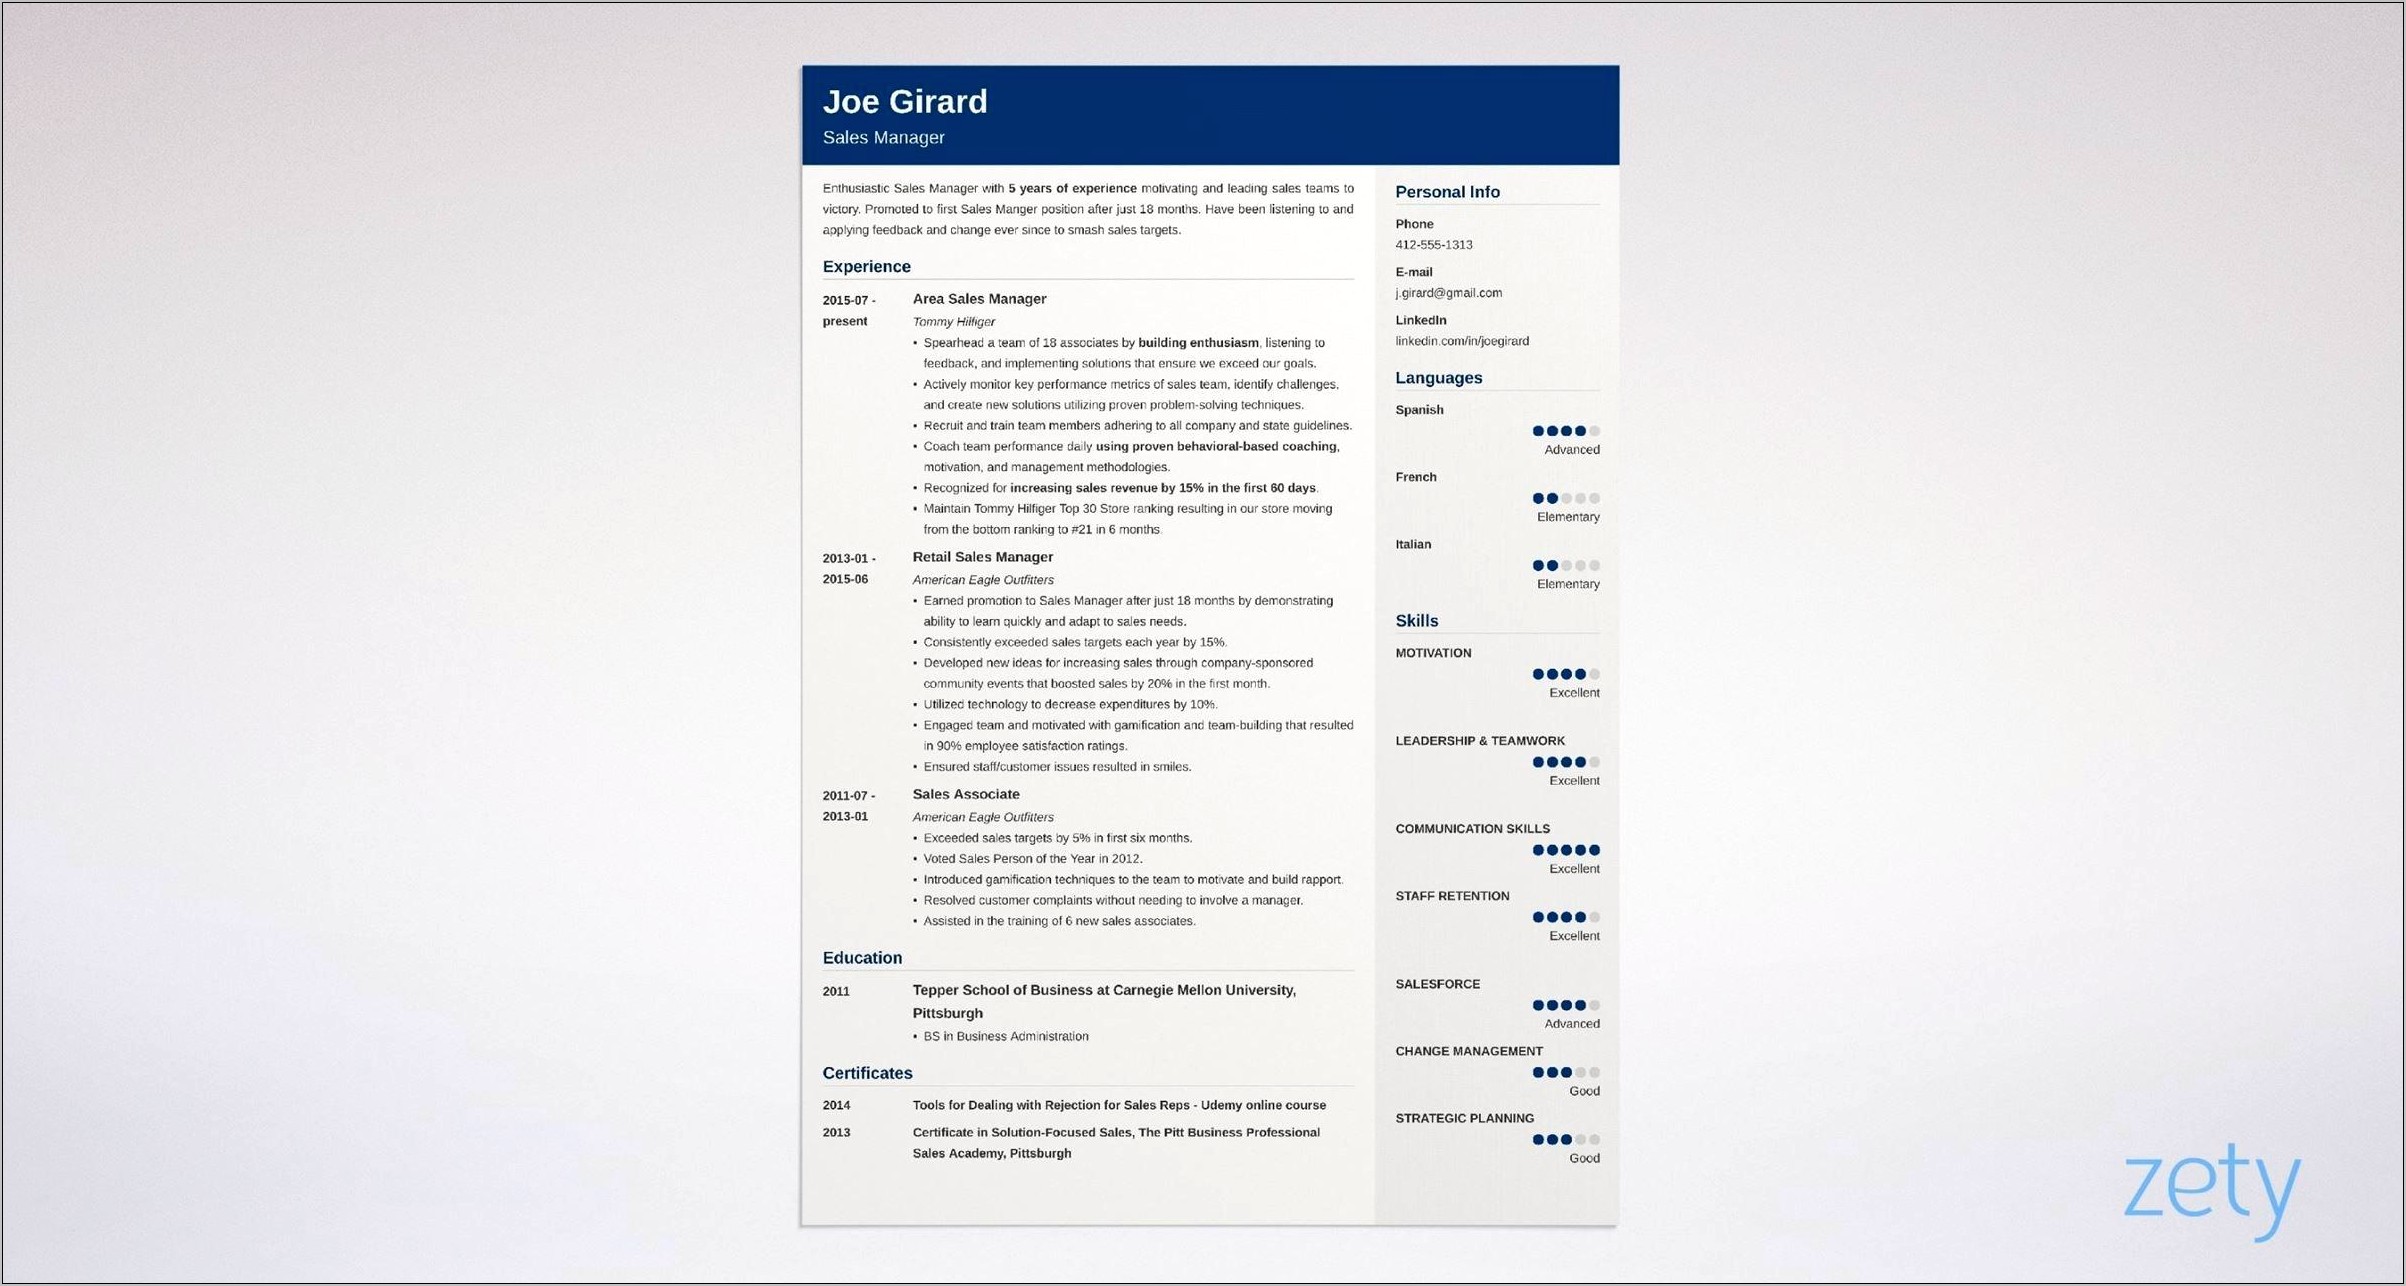 Sales Manager Job Description Resume Sample